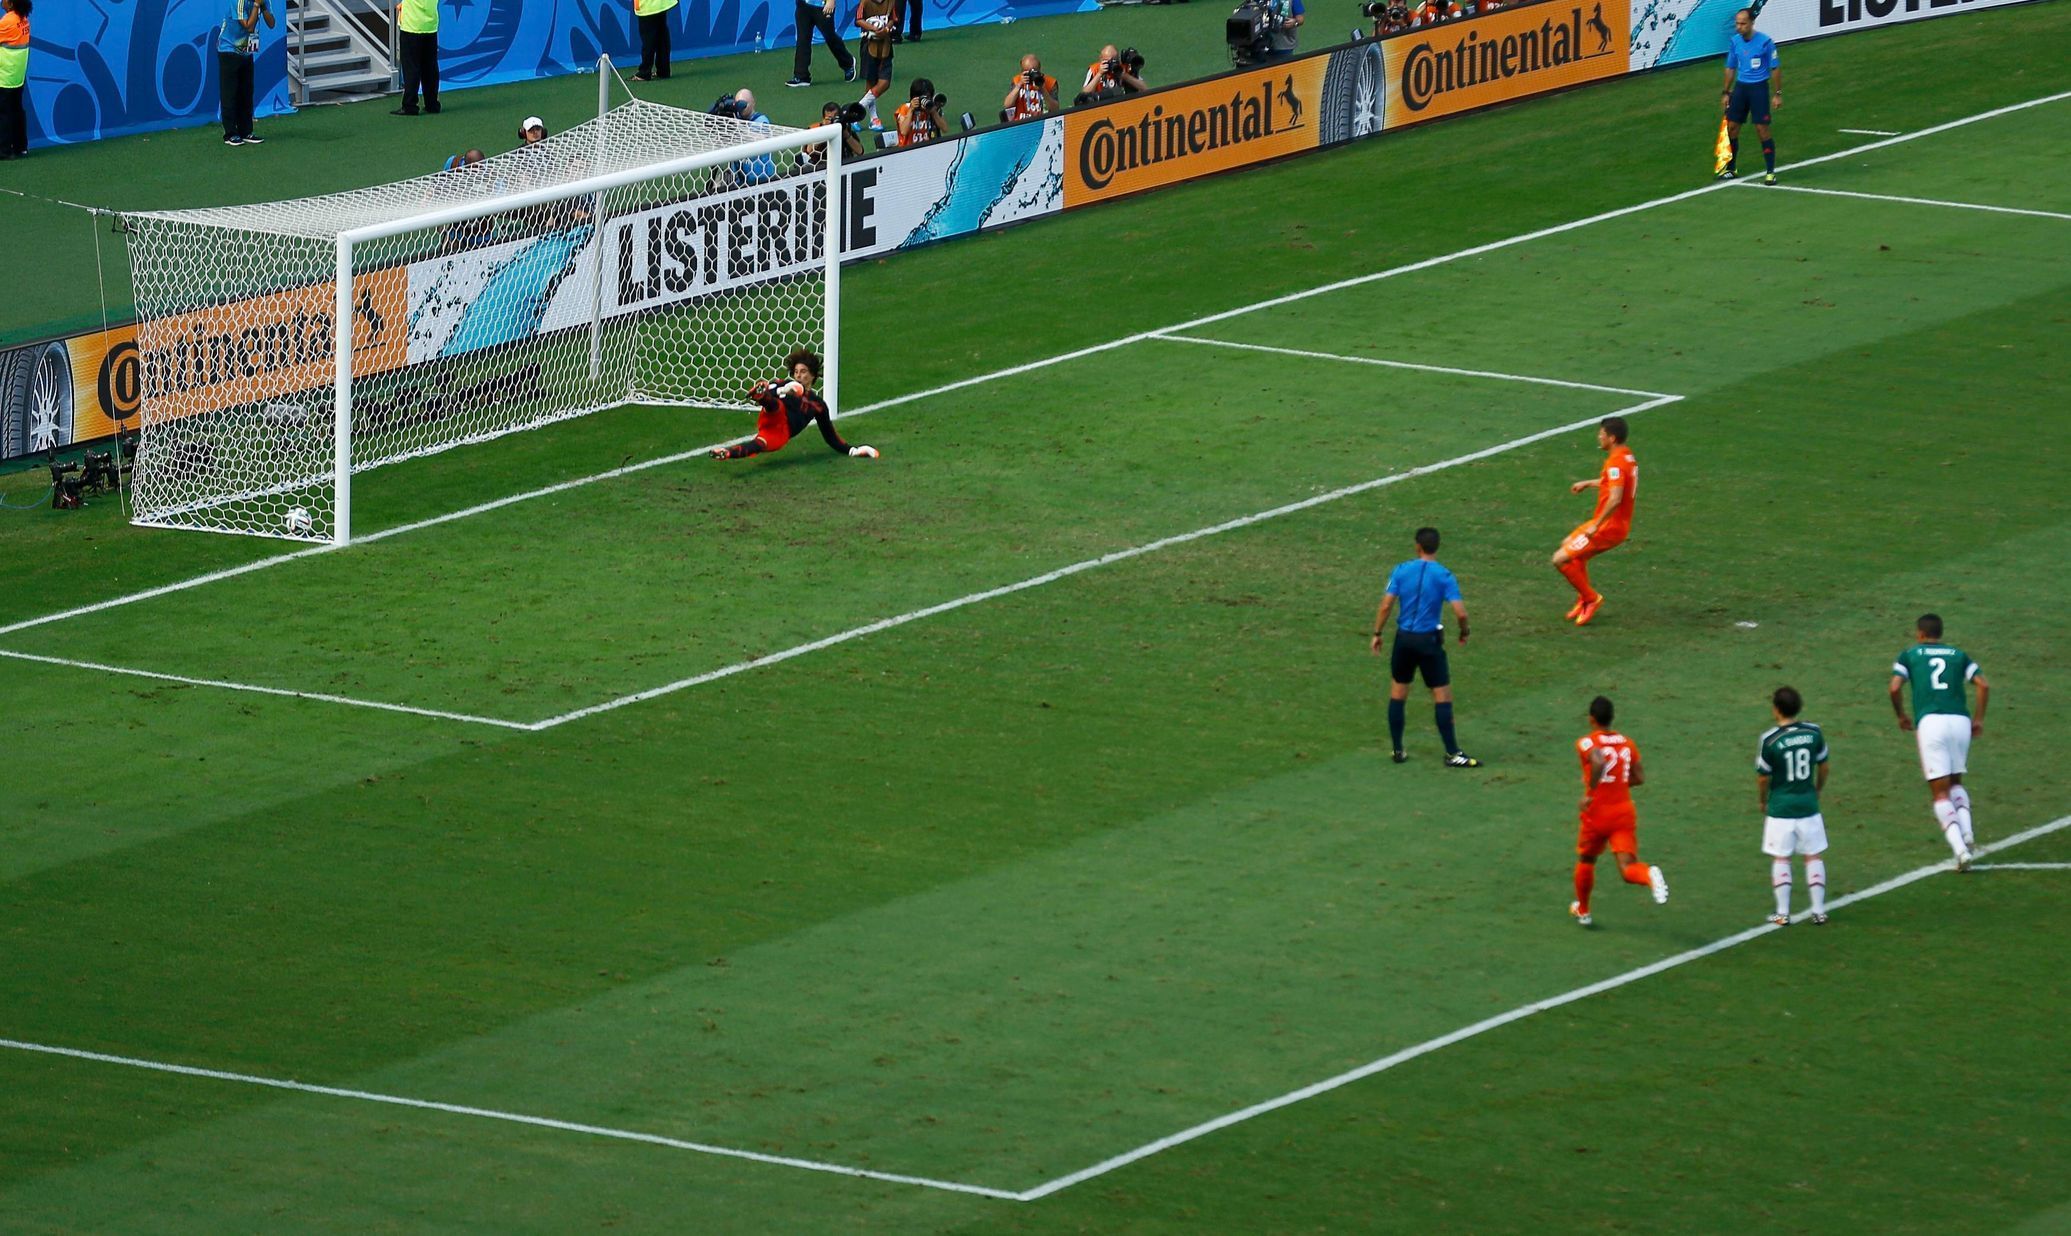 MS 2014, Nizozemsko-Mexiko: Klaas-Jan Huntelaar proměnil penaltu